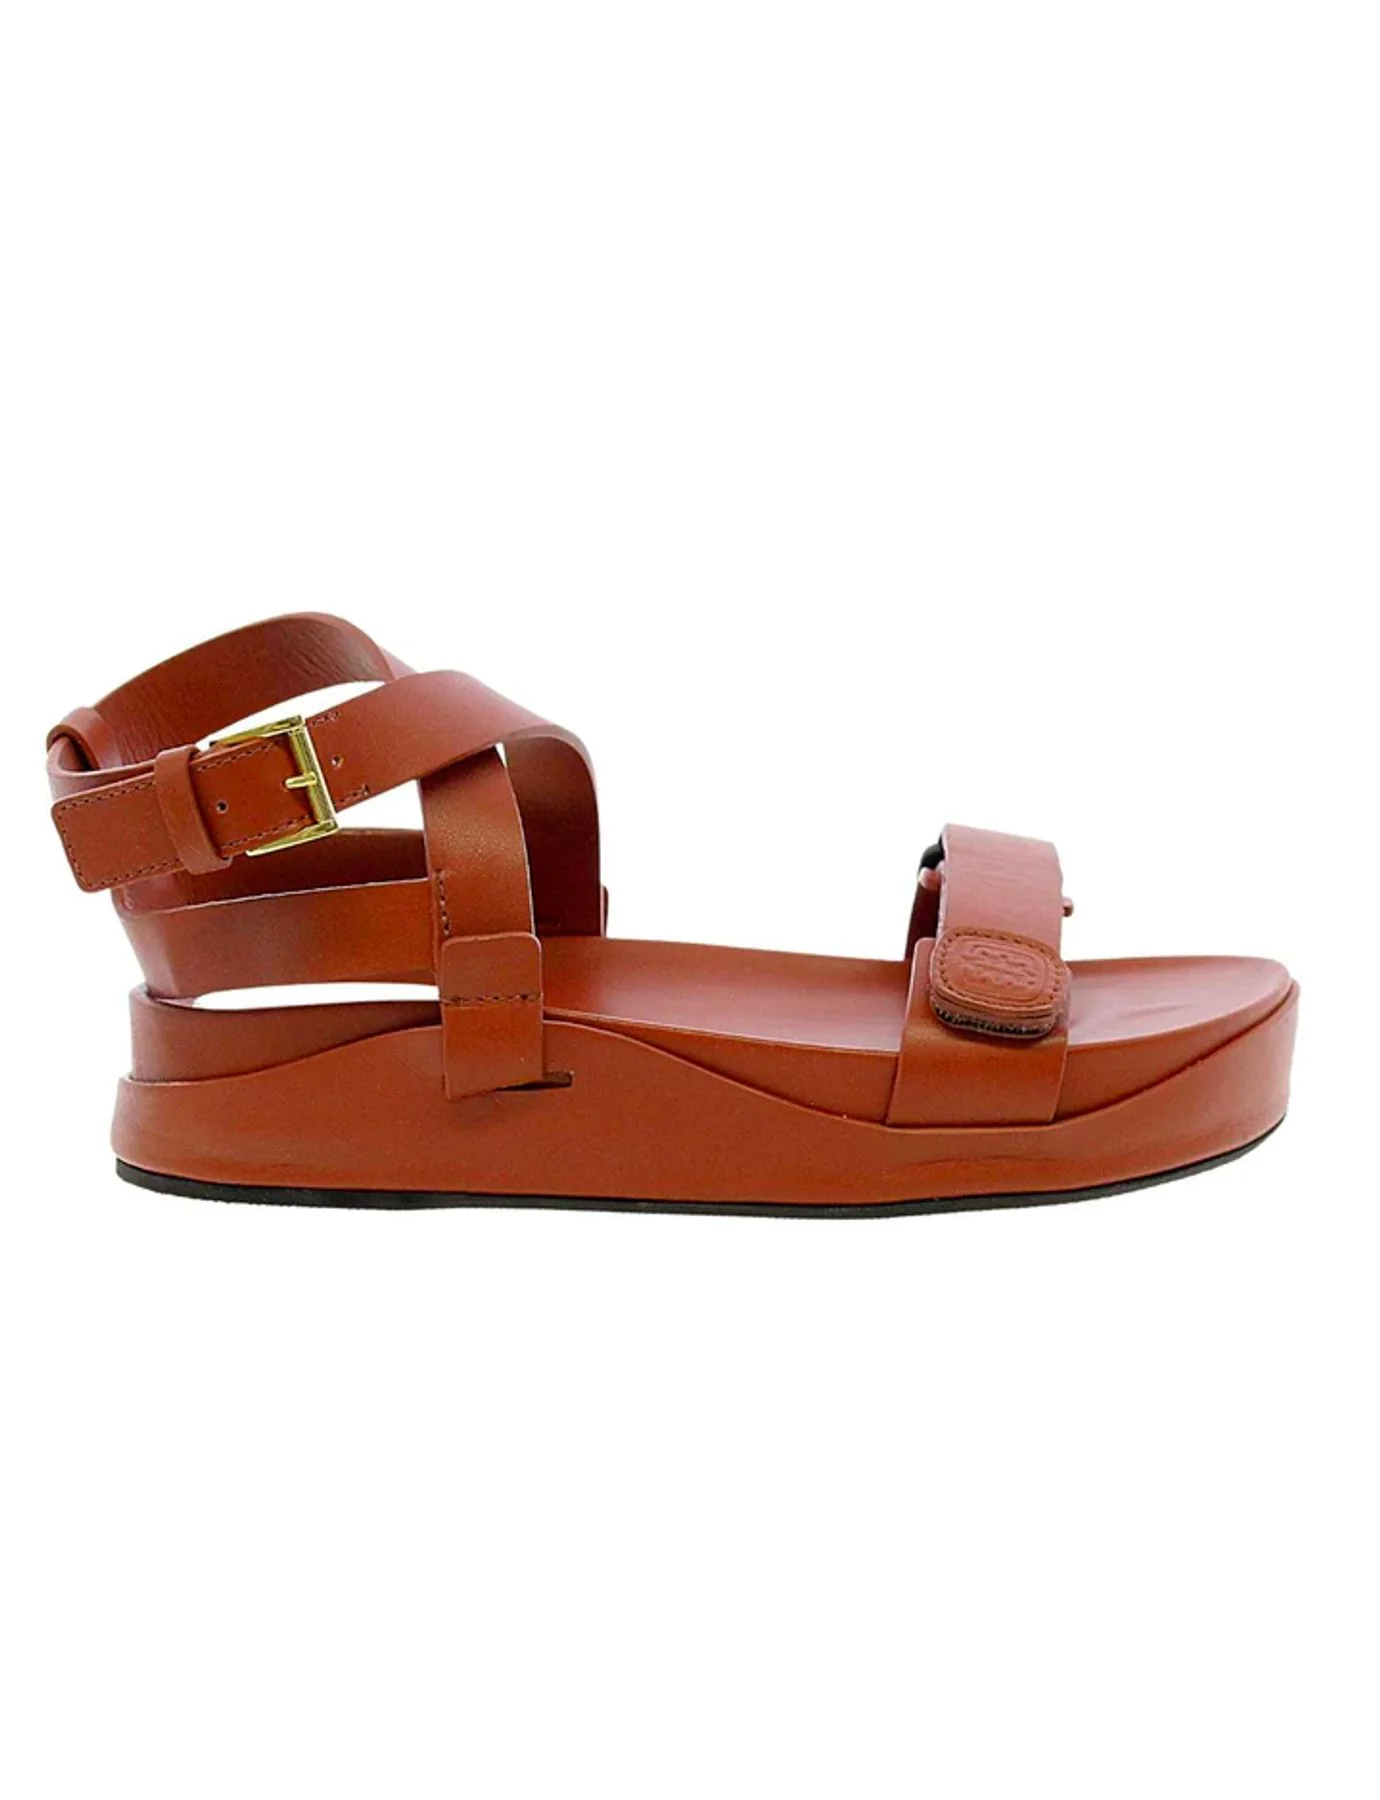 sandal-a-platform-cognac